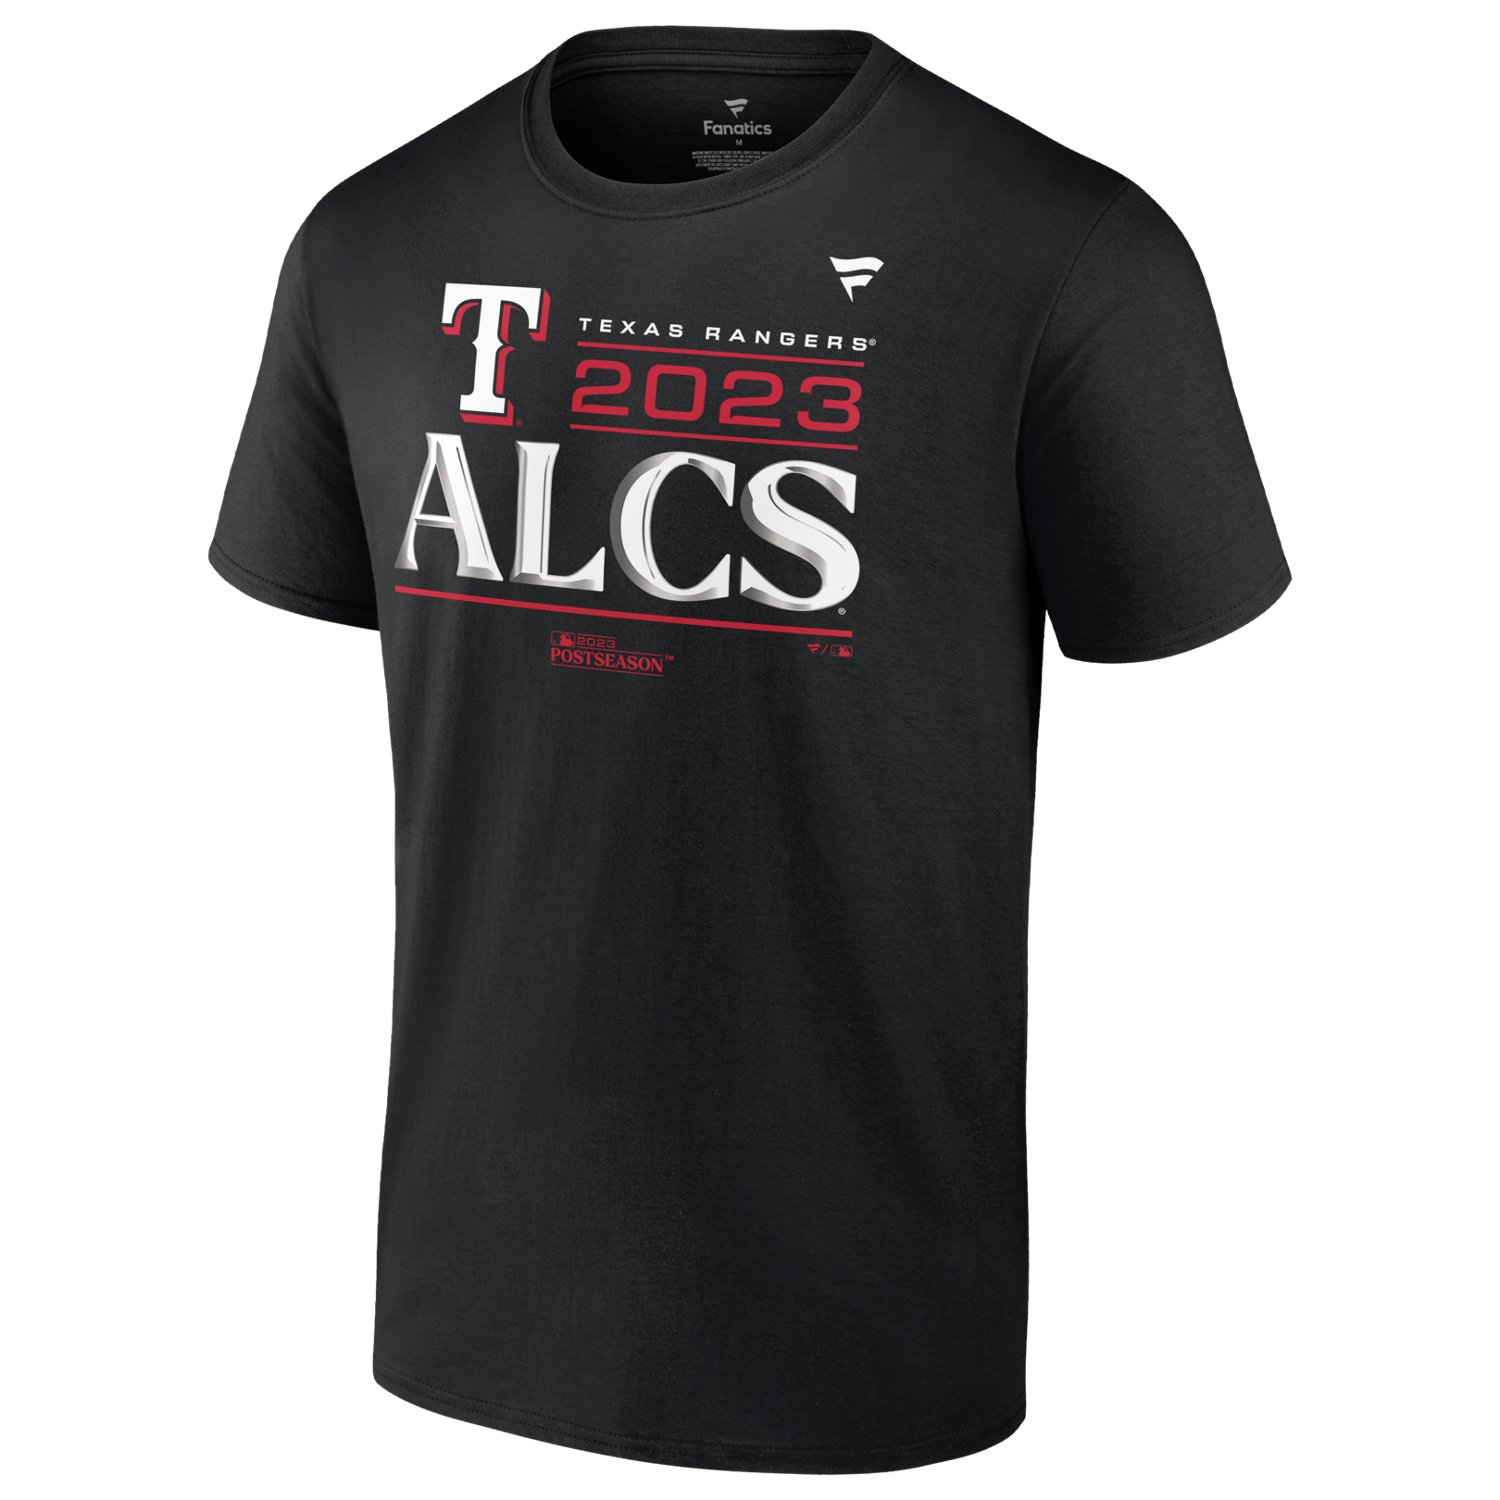 St. Louis Cardinals Blues Team Baseball 2023 T-Shirt Gift For Fans Hockey